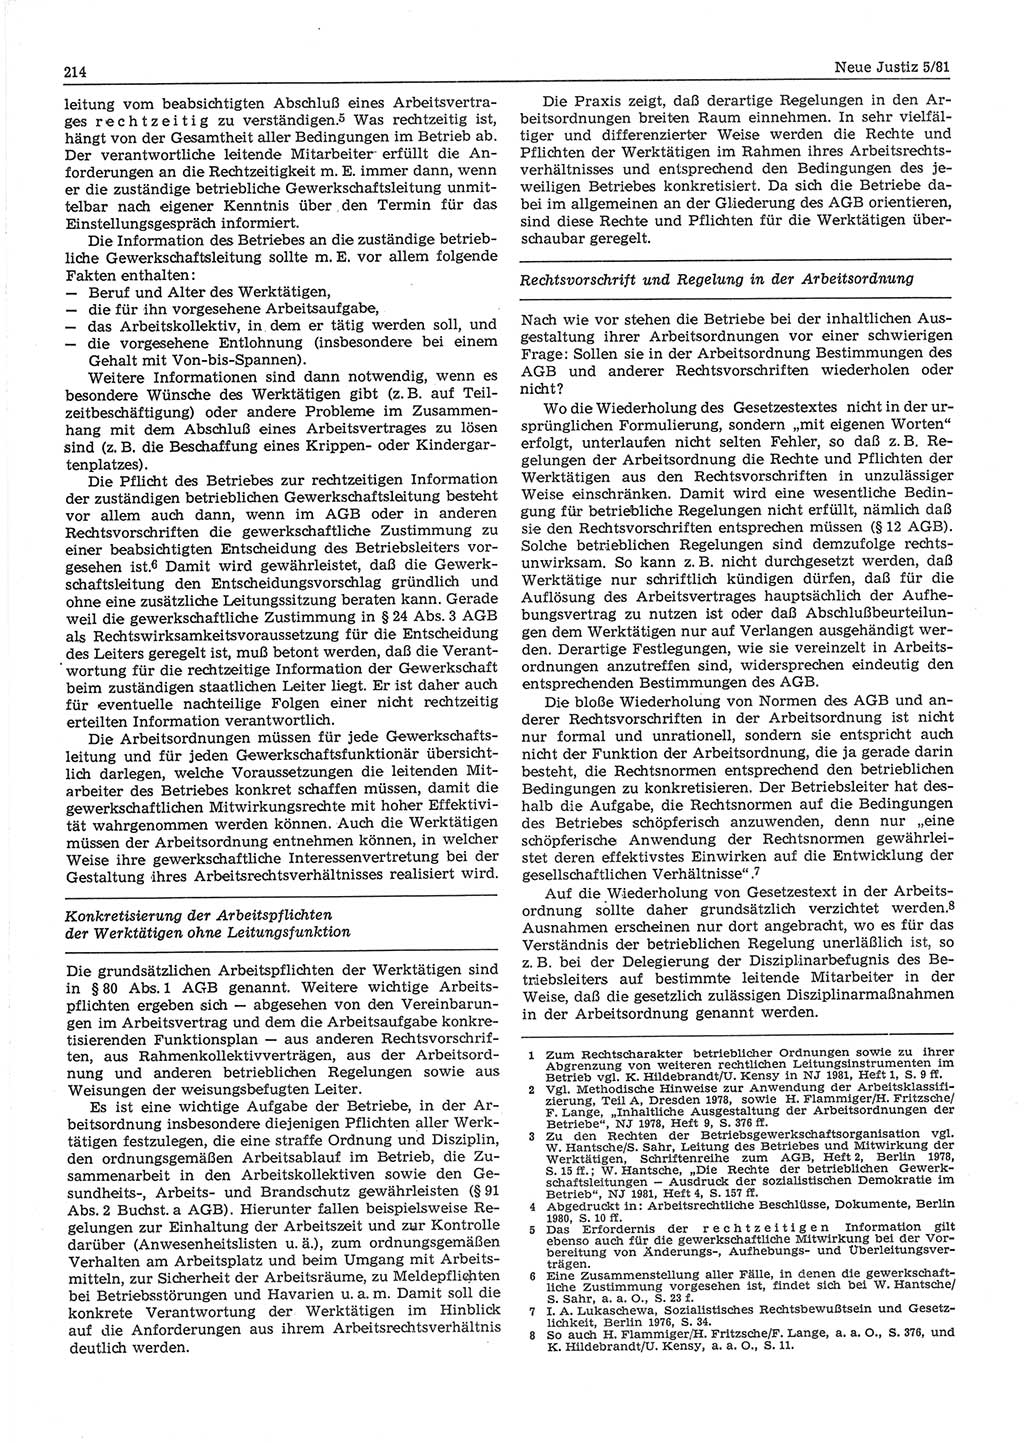 Neue Justiz (NJ), Zeitschrift für sozialistisches Recht und Gesetzlichkeit [Deutsche Demokratische Republik (DDR)], 35. Jahrgang 1981, Seite 214 (NJ DDR 1981, S. 214)